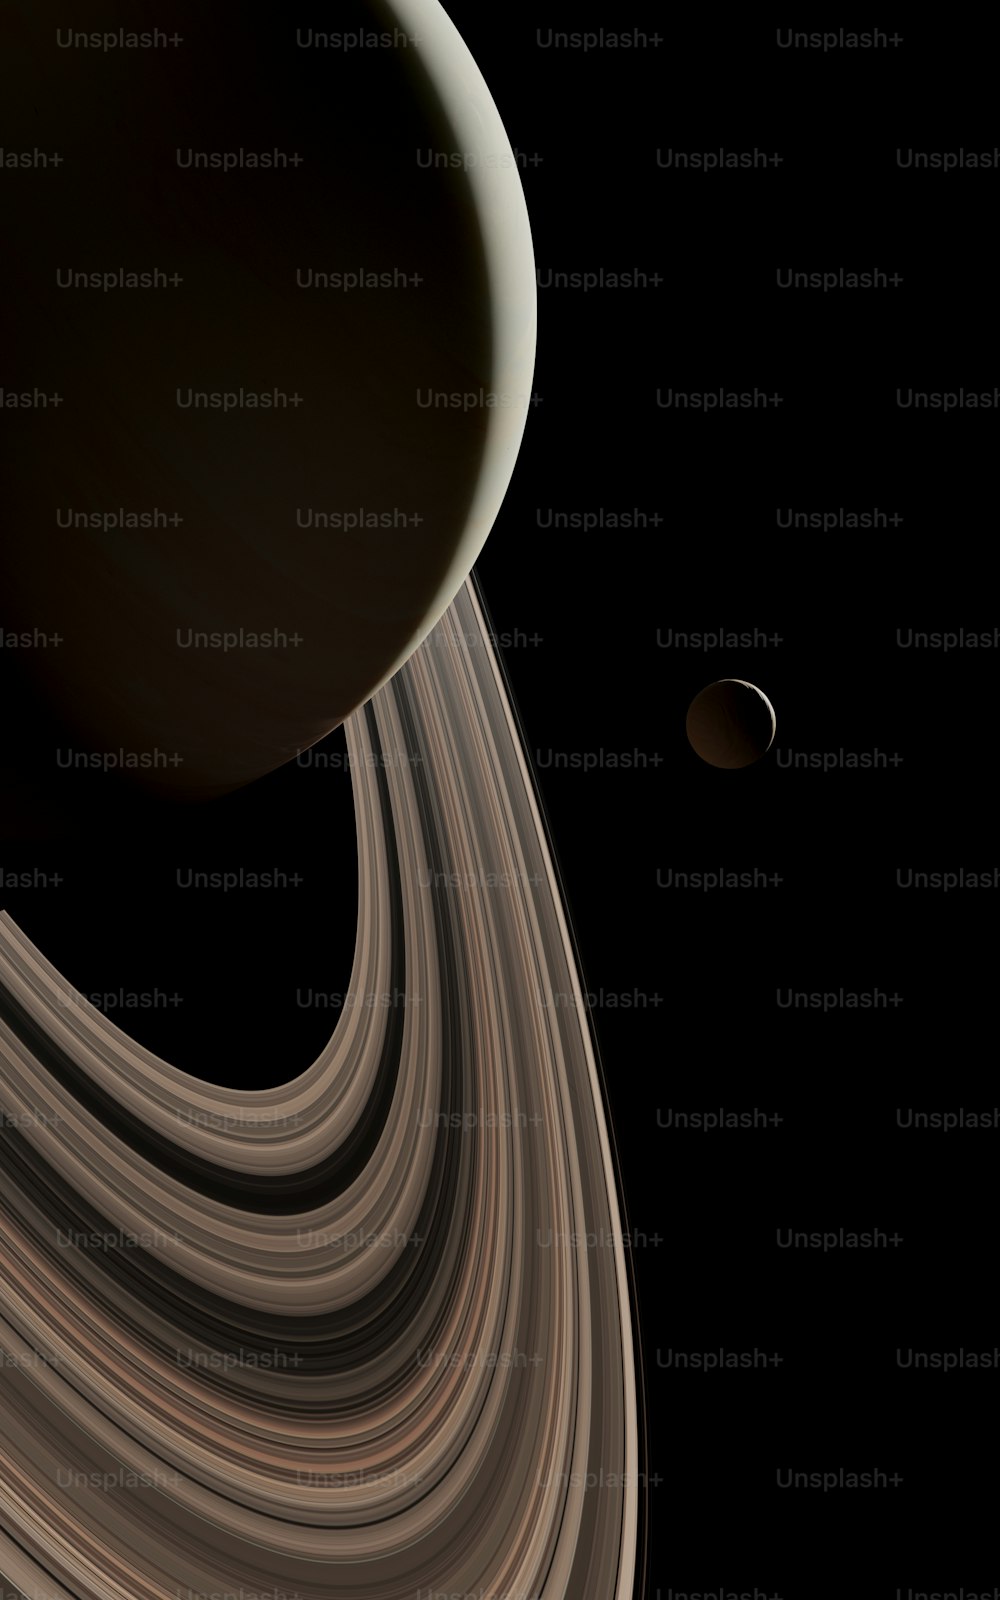 Una foto de Saturno tomada por la nave espacial Cassini de la NASA